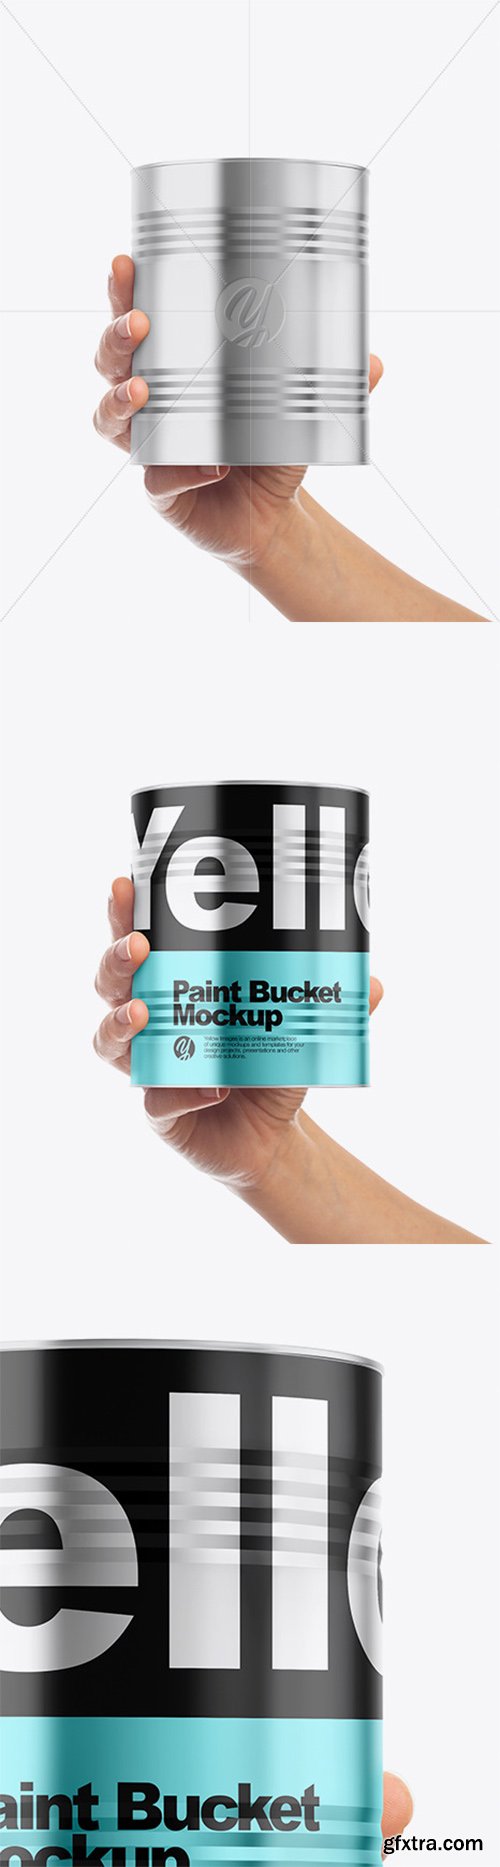 Metallic Paint Bucket in Hand Mockup - Front View 60761